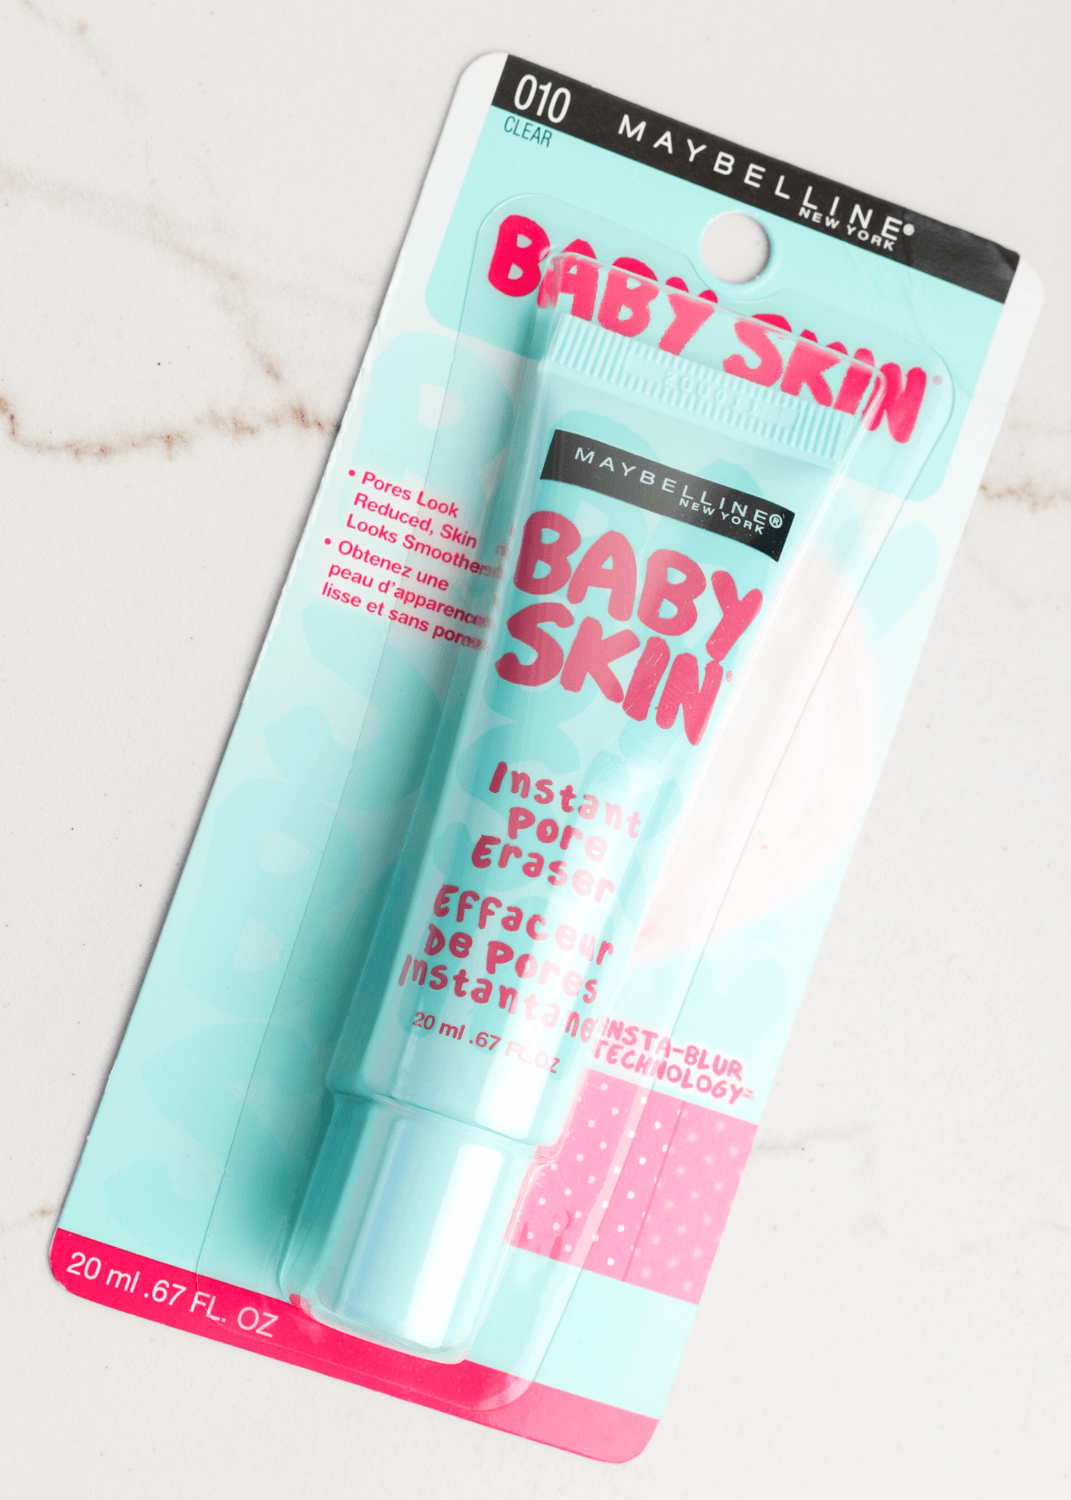 Baby Skin Instant Pore Eraser Primer Romanamx